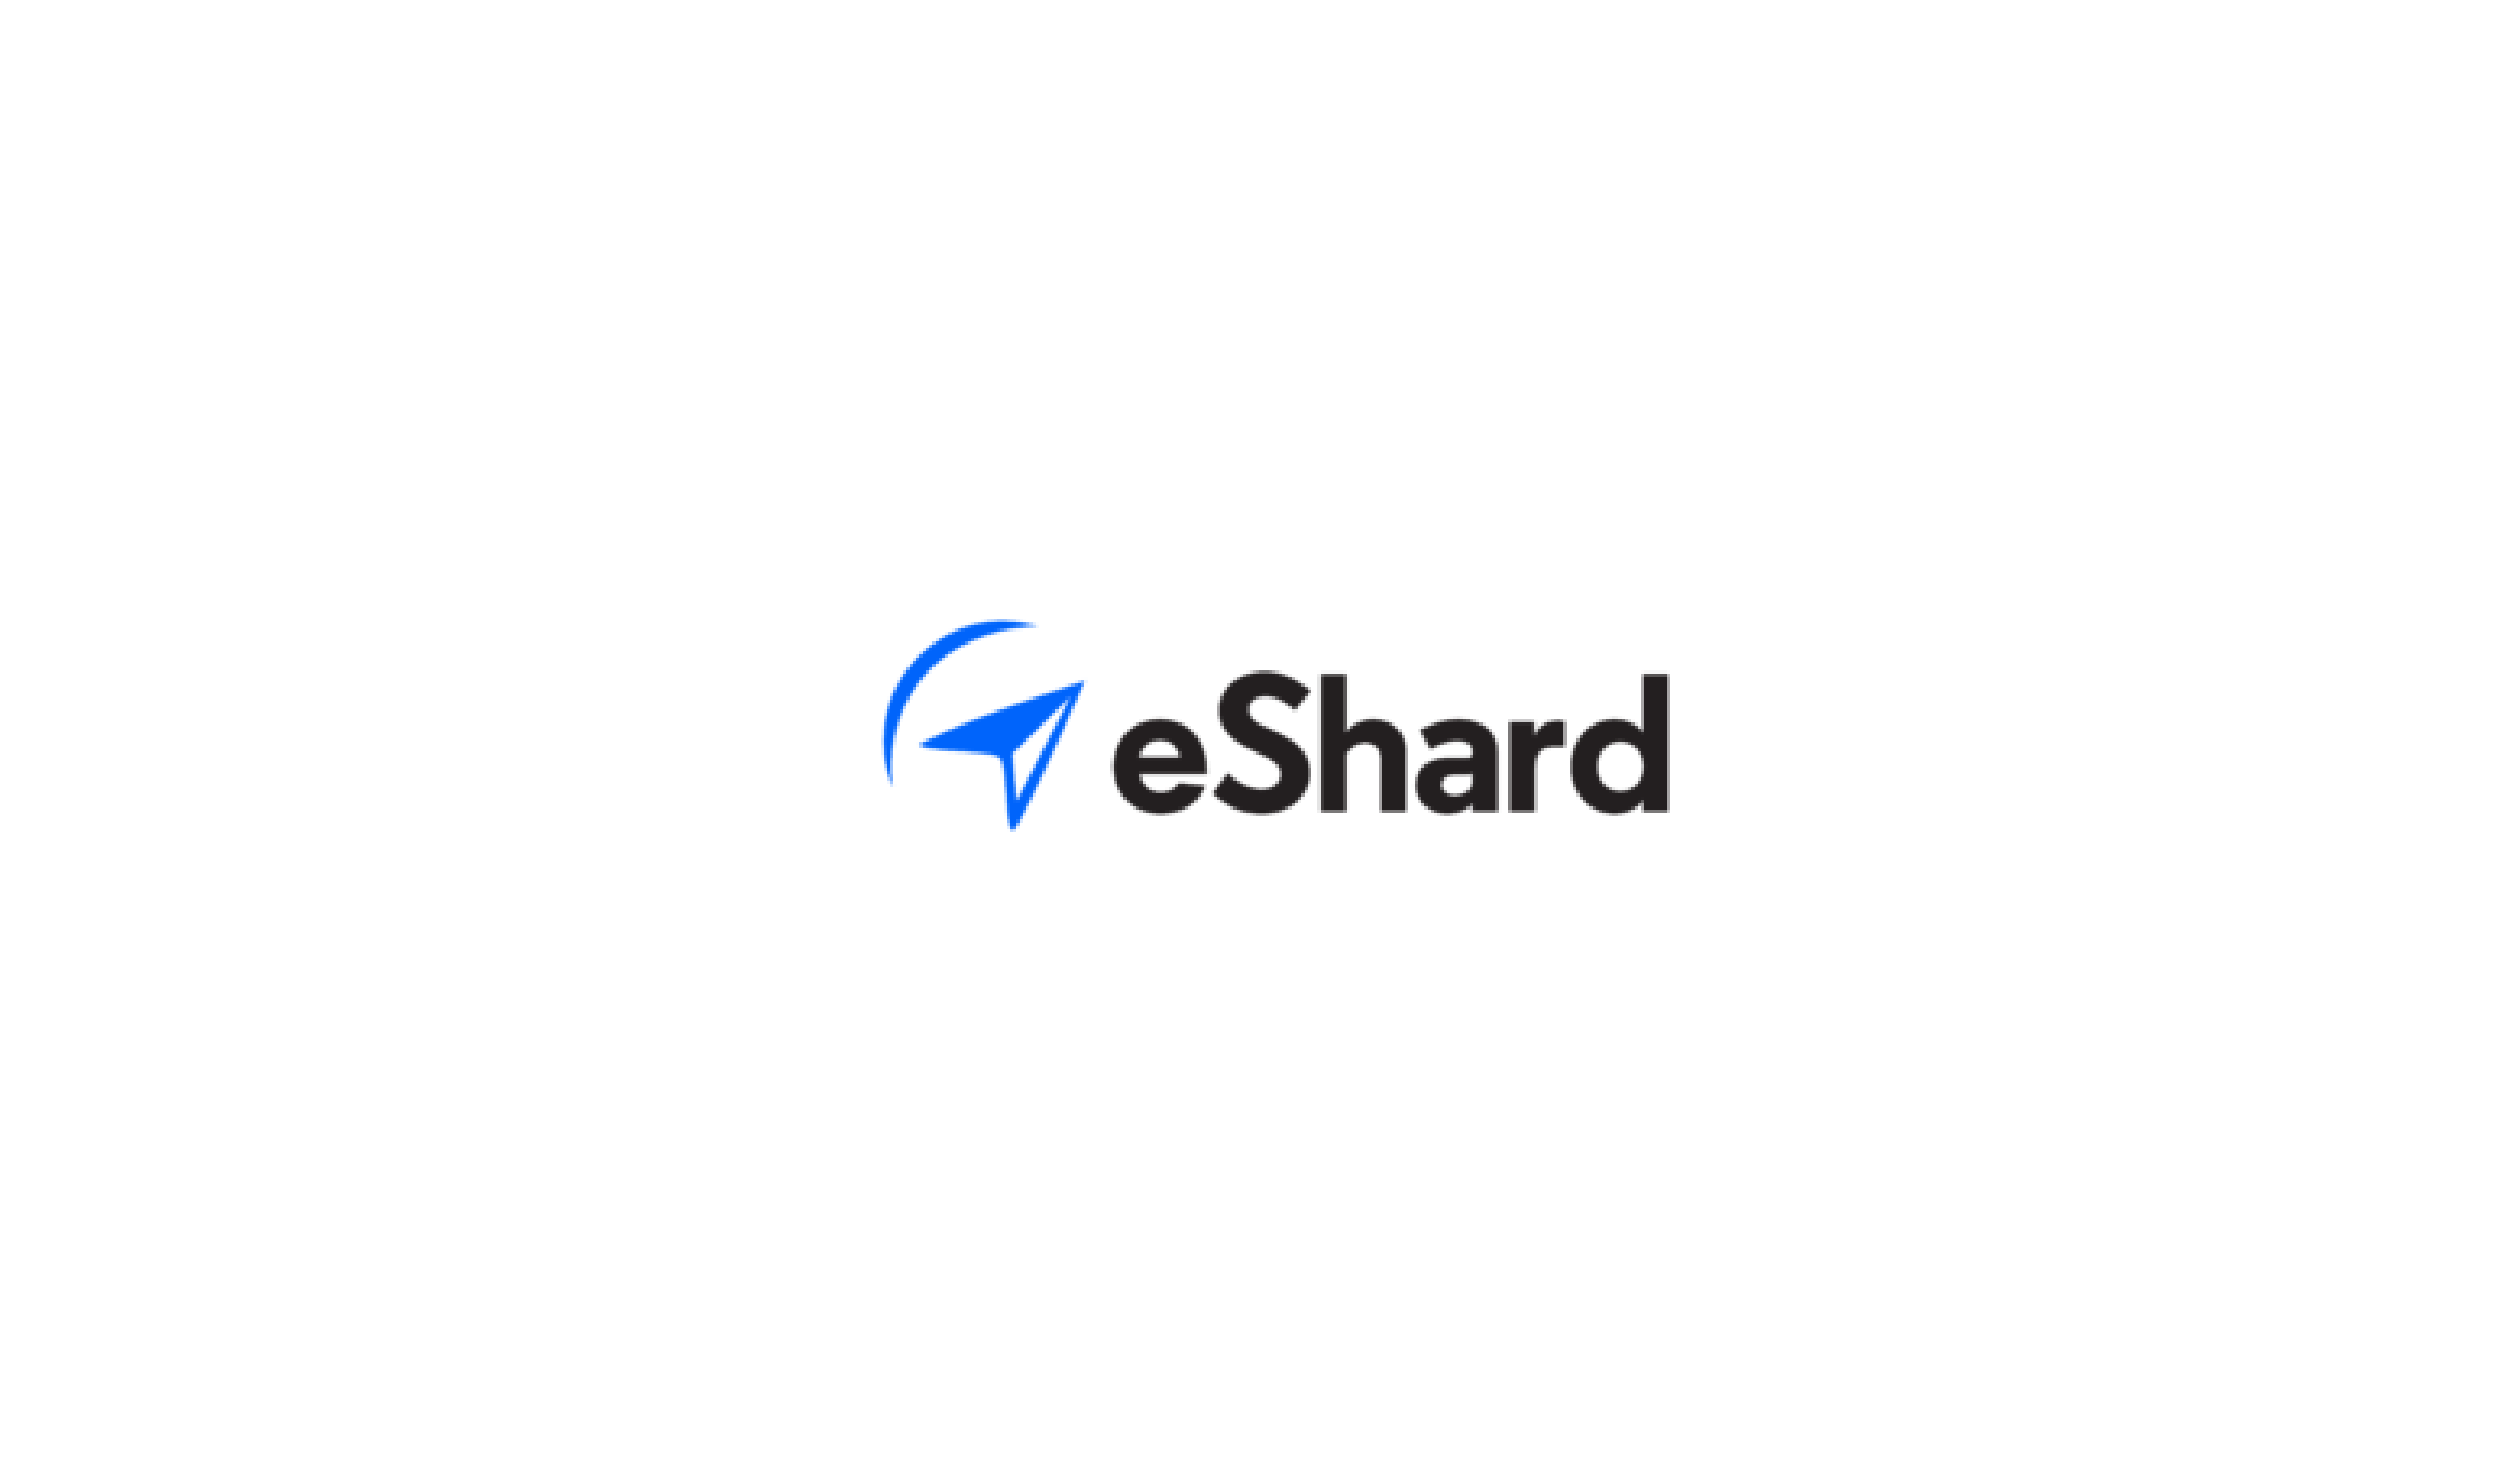 https://www.ccifrance-allemagne.fr/wp-content/uploads/2021/11/eshard-logo-1.png